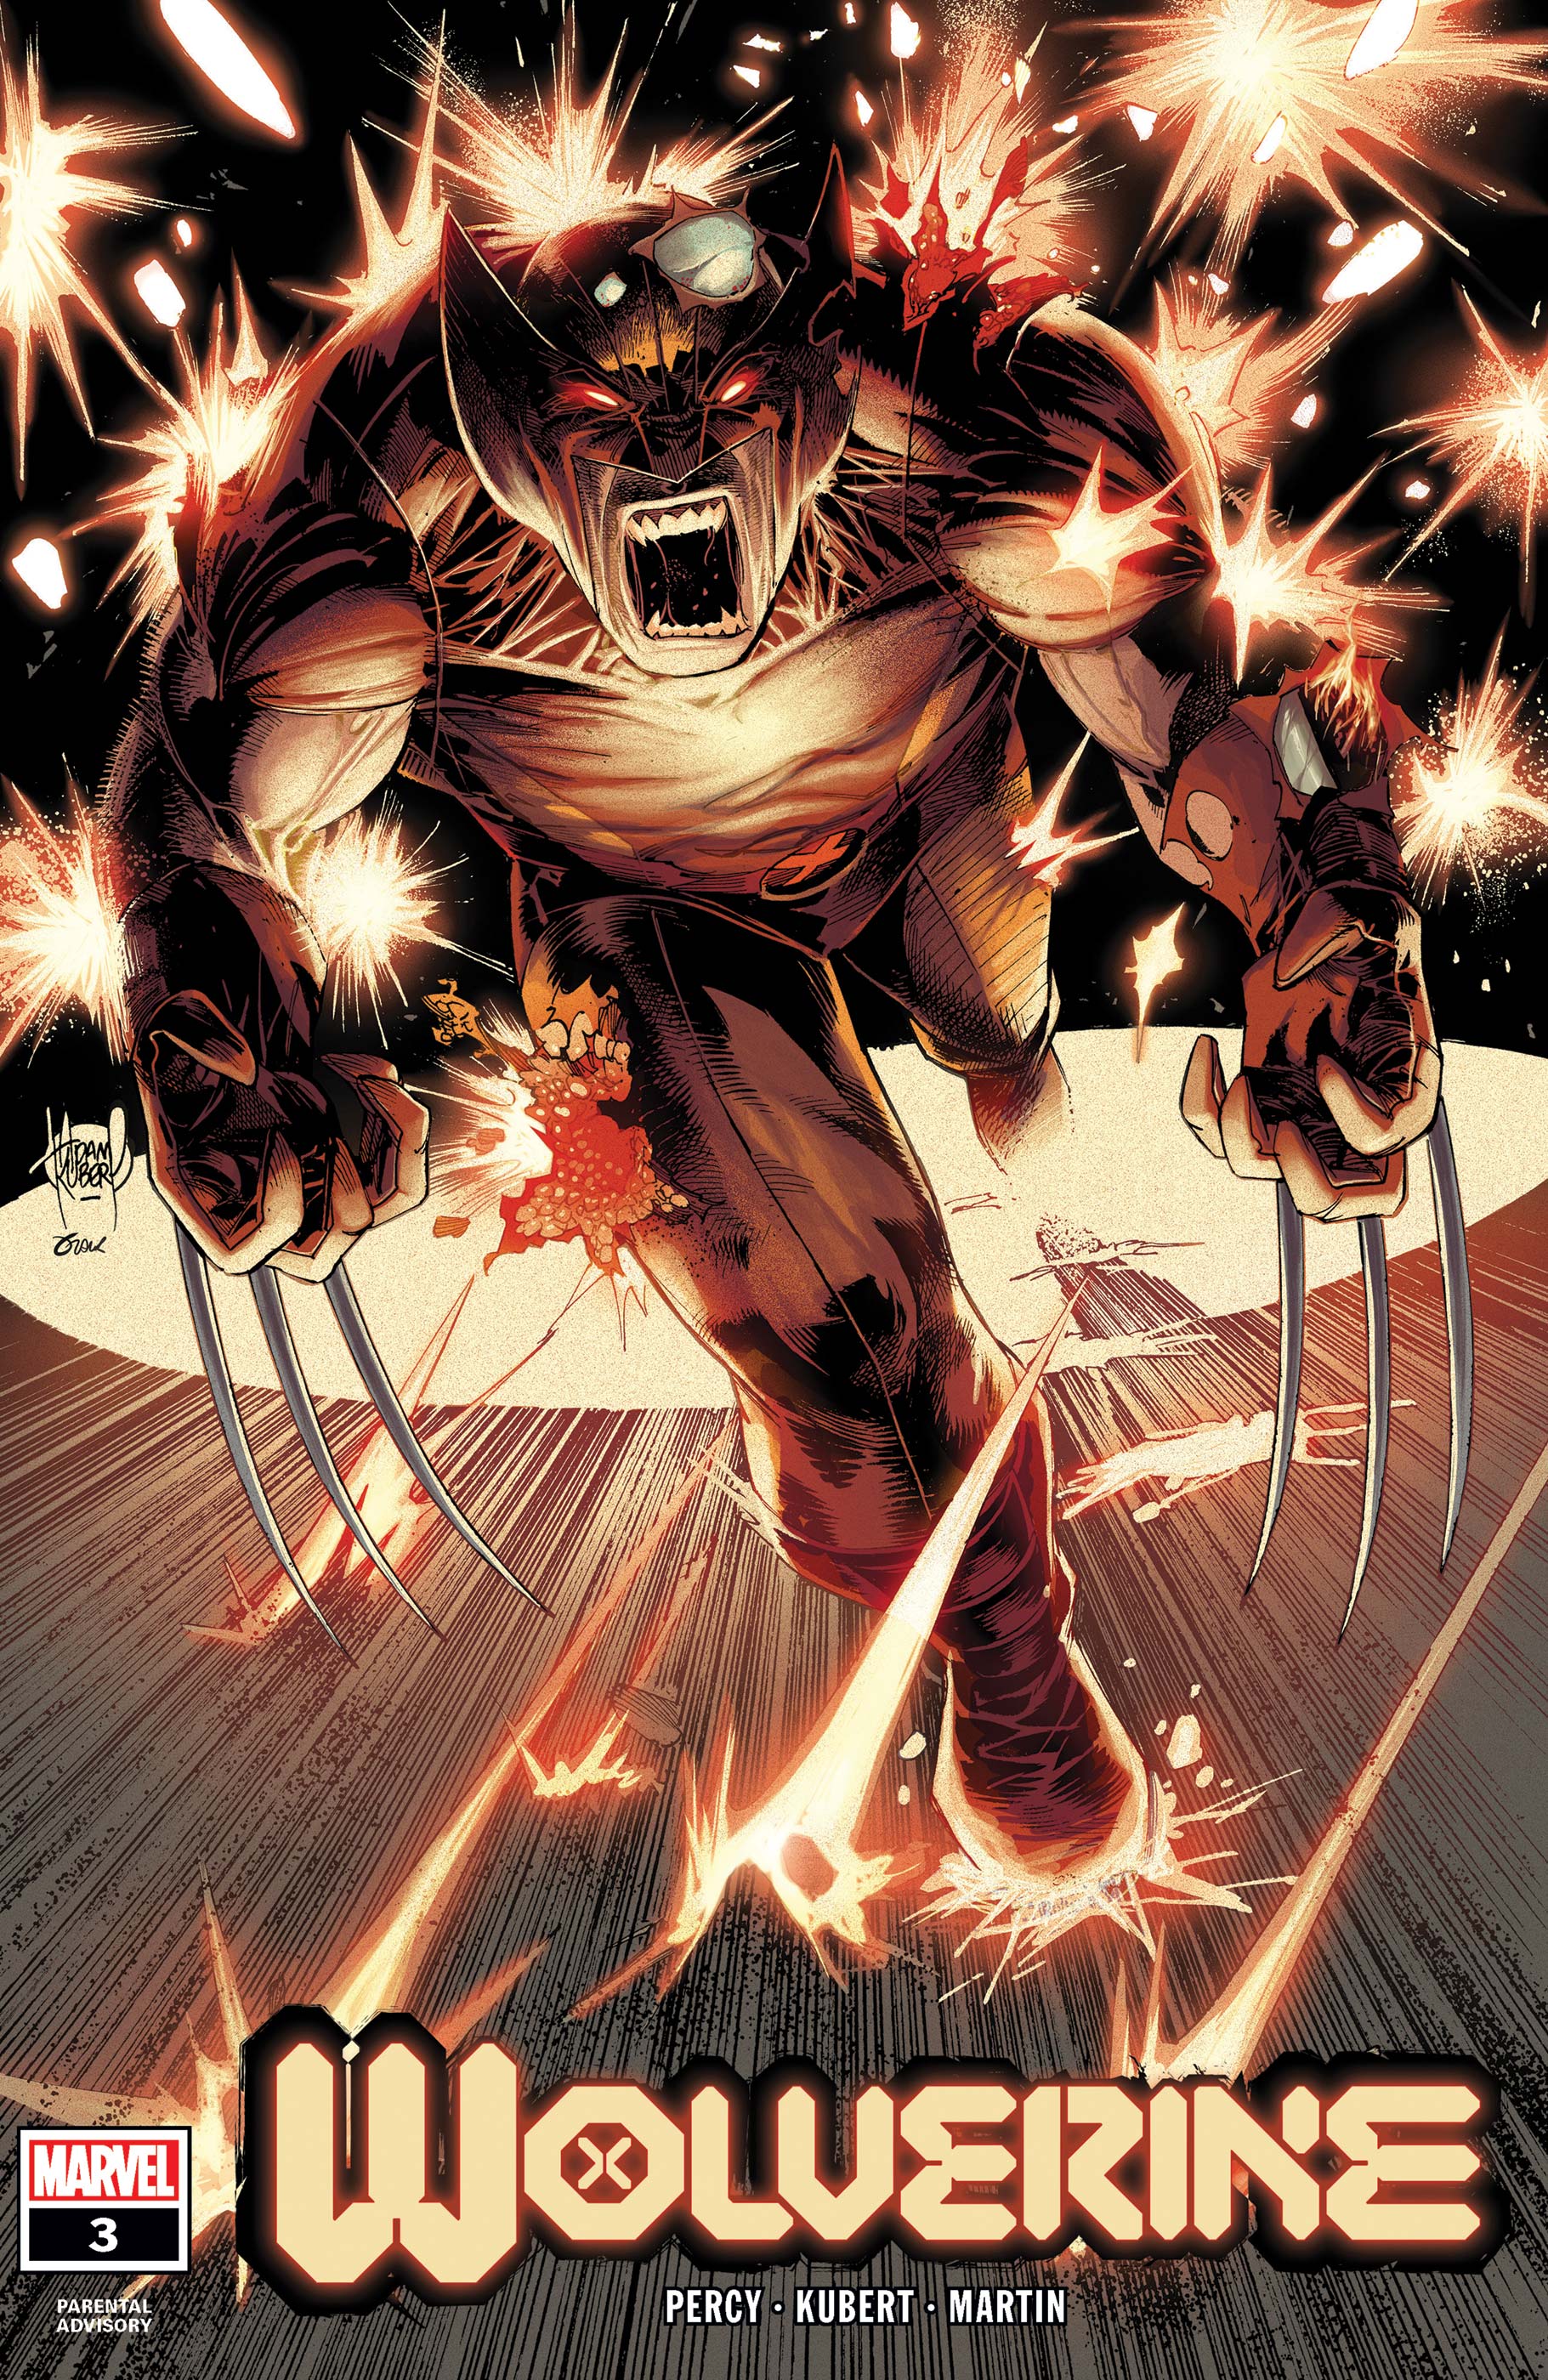 Wolverine (2020) #3